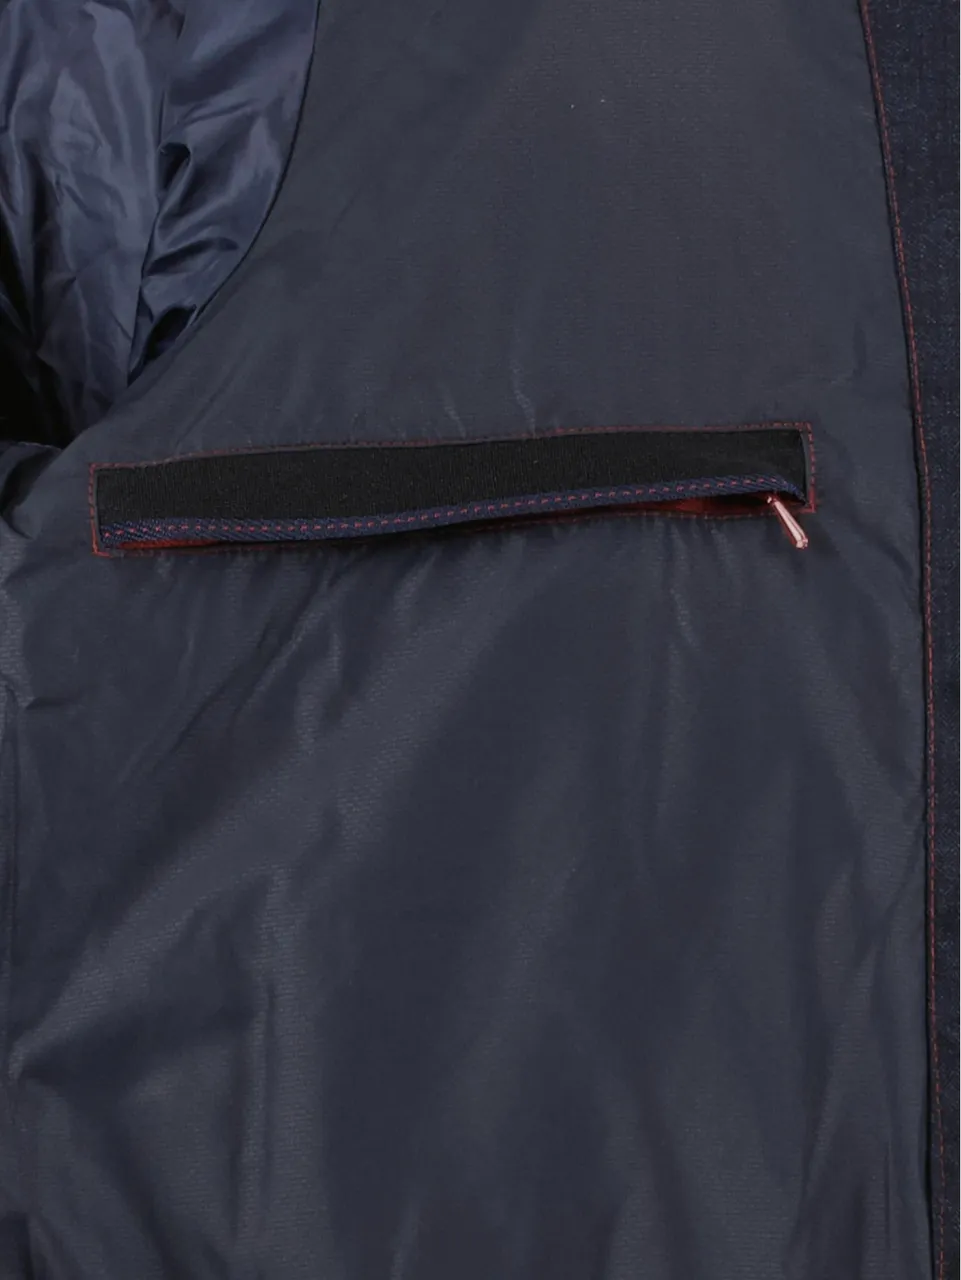 DNR Winterjack textile jacket 21704/799